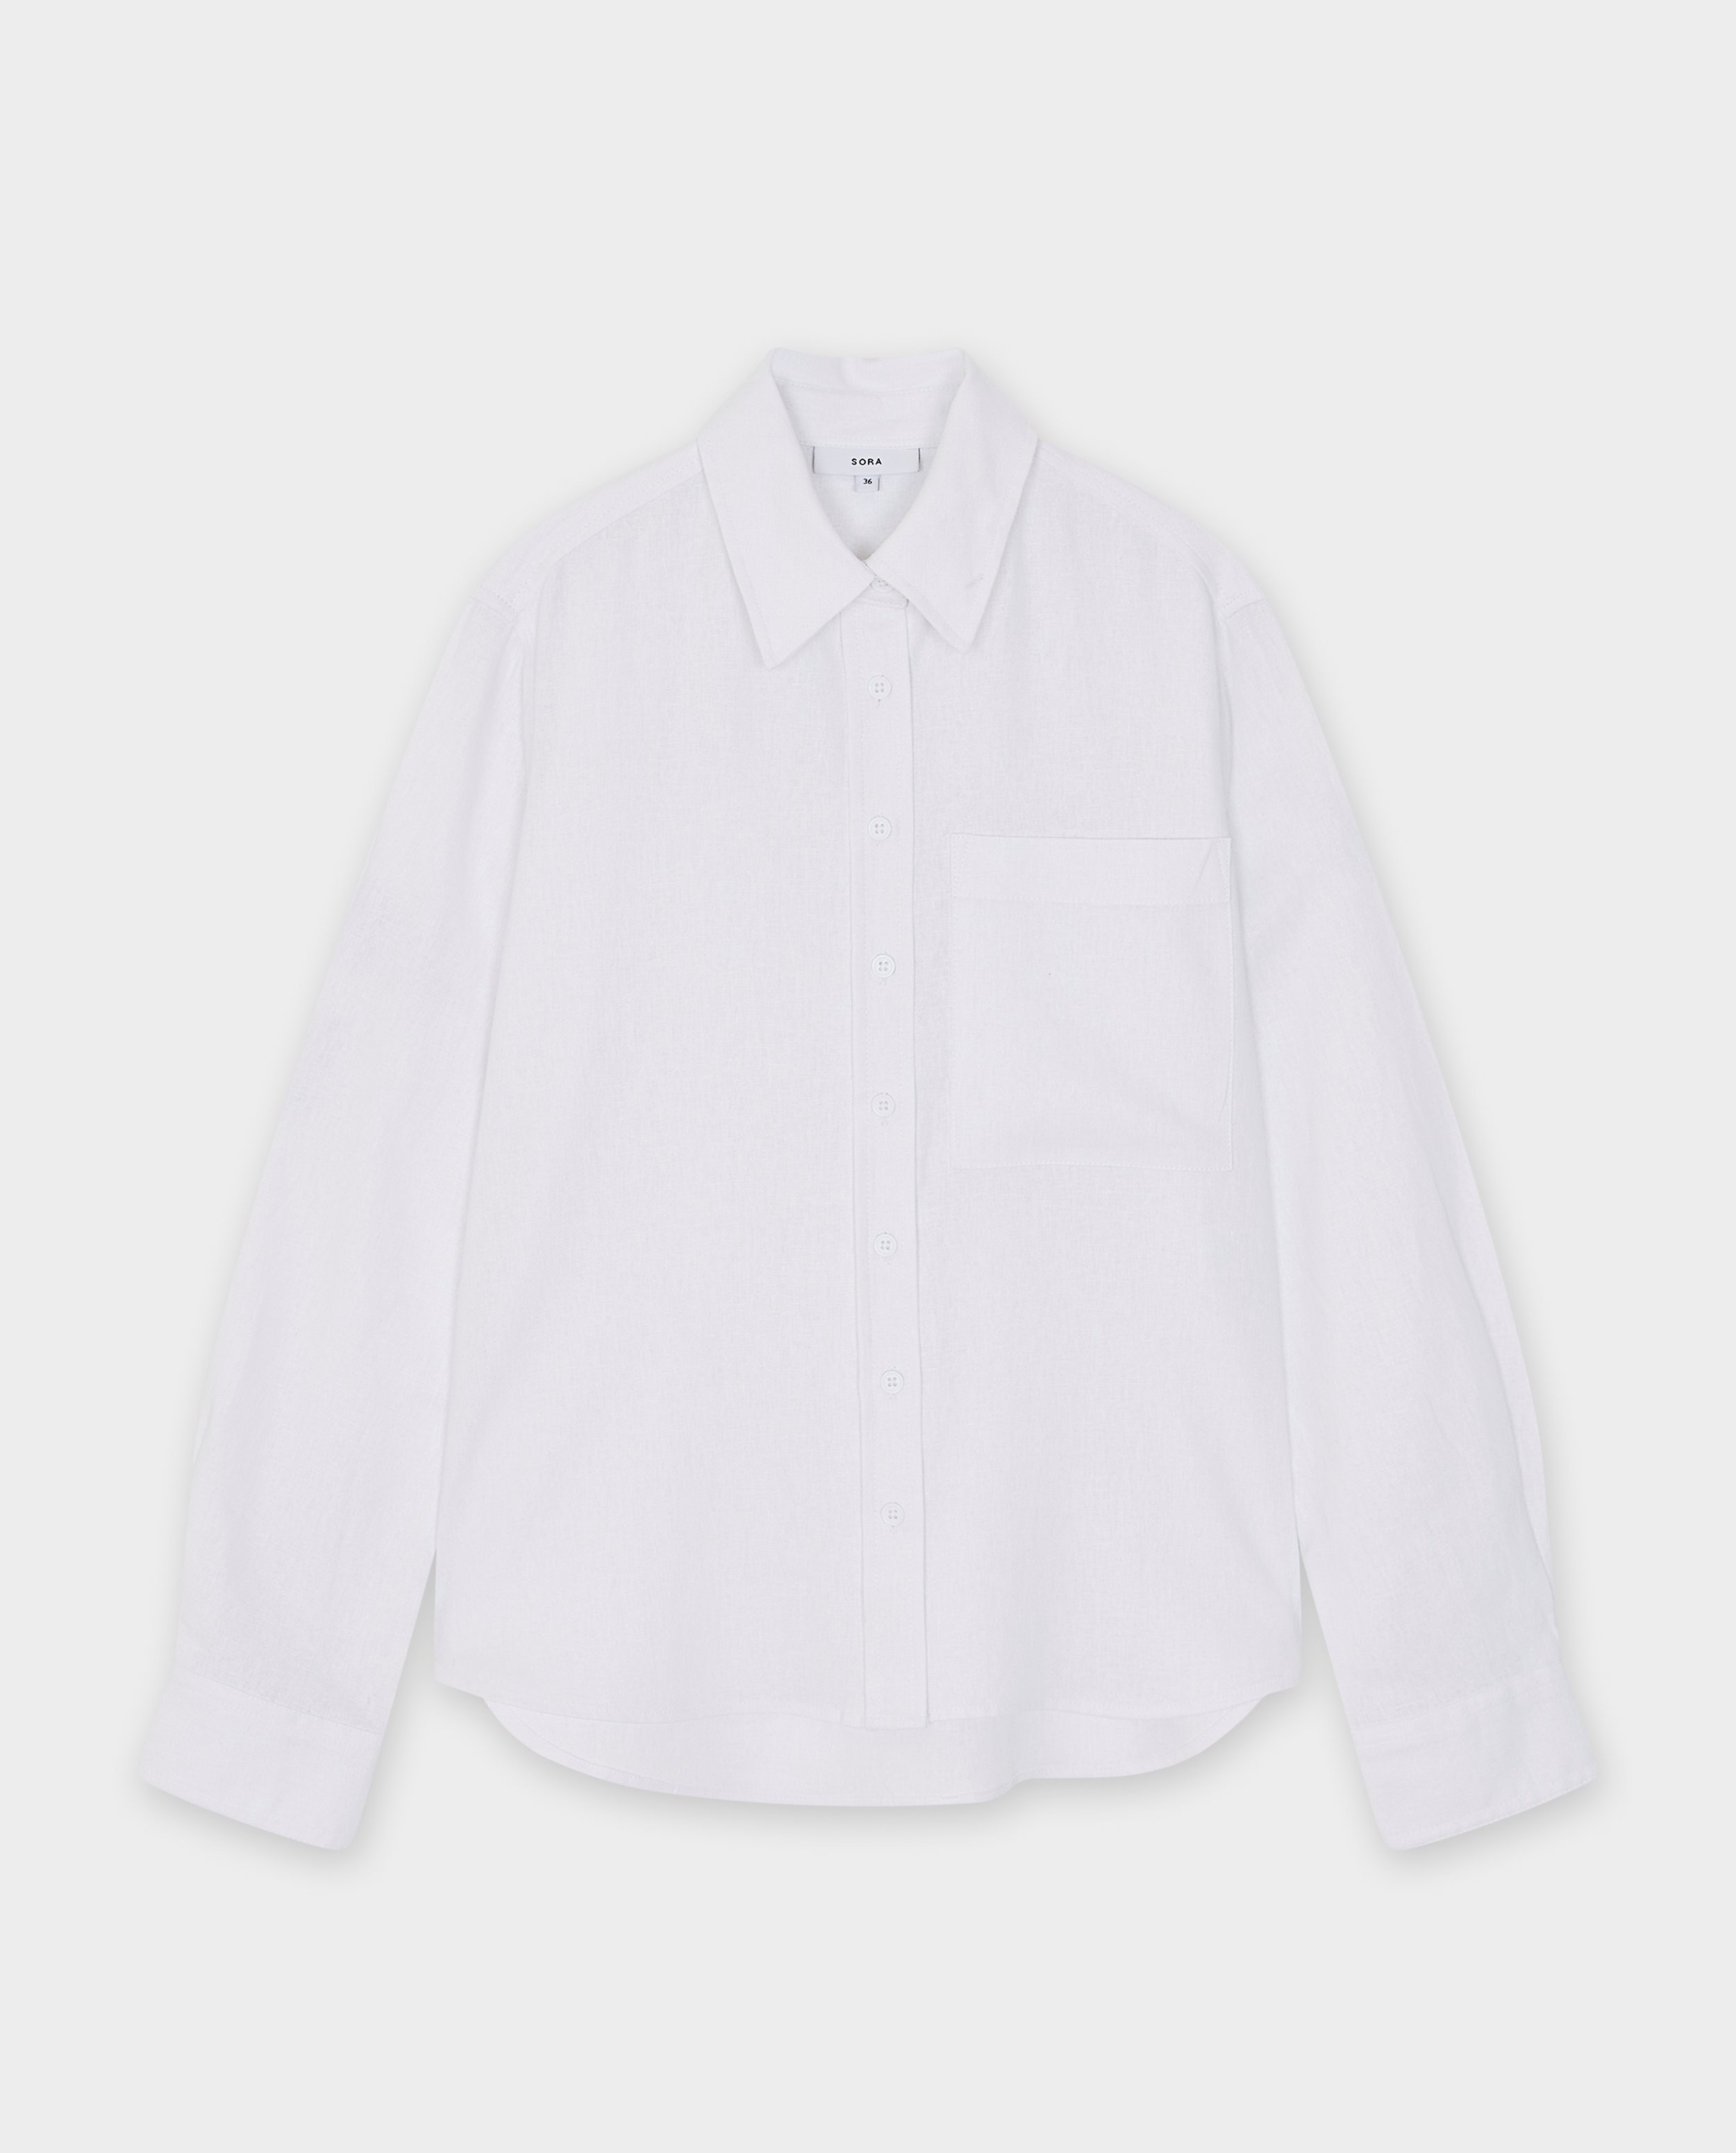 Hemden - Wit hemd met linnen